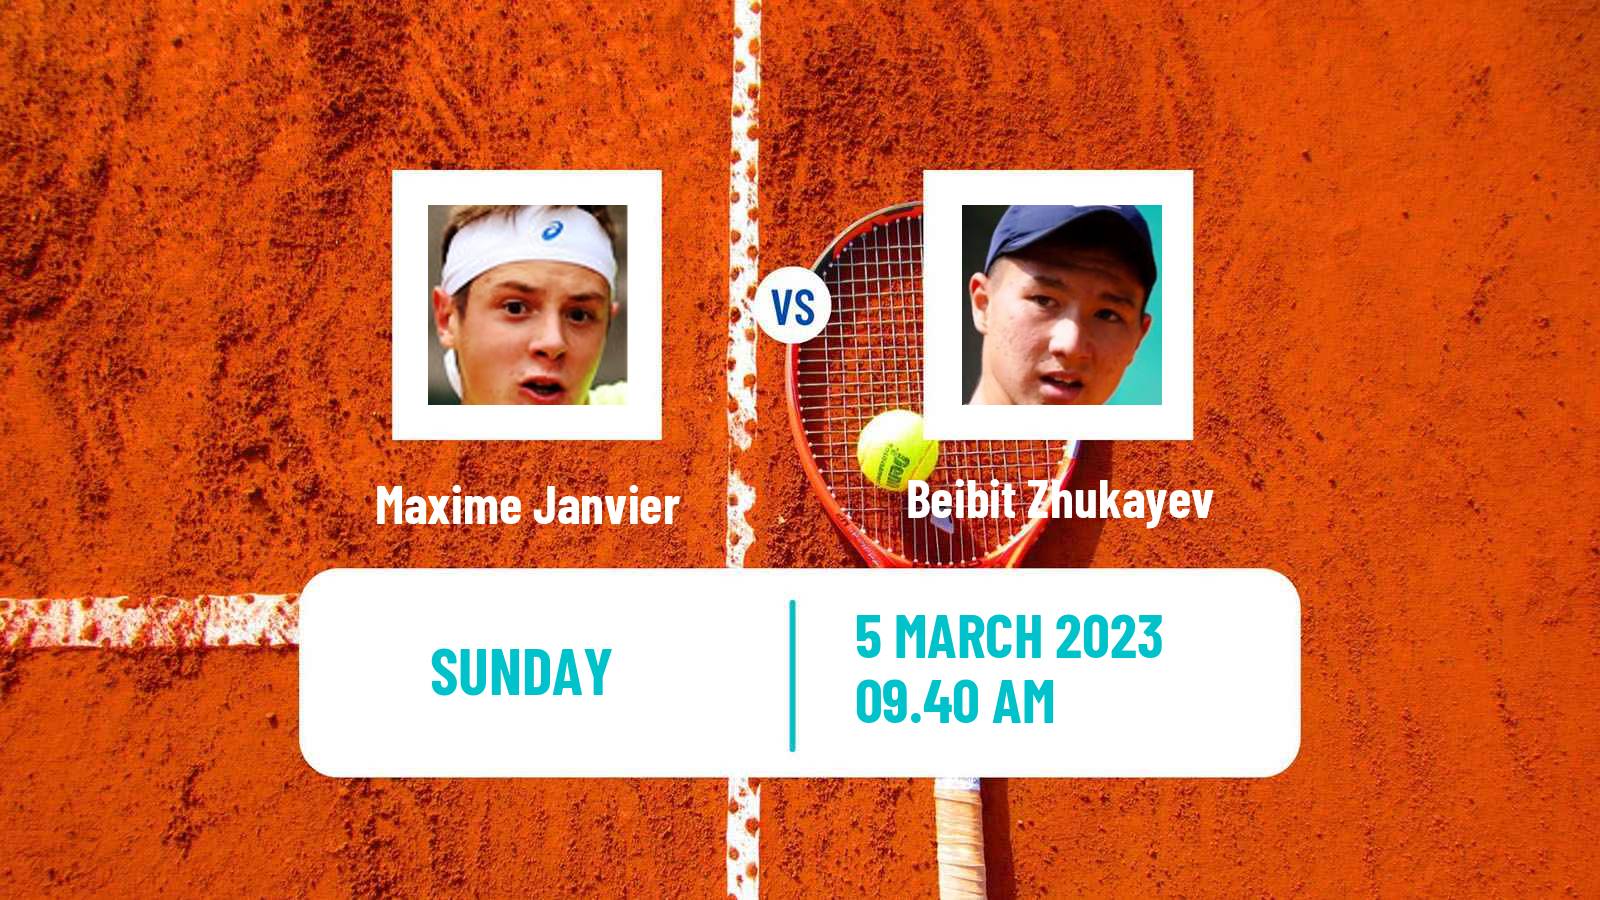 Tennis ATP Challenger Maxime Janvier - Beibit Zhukayev